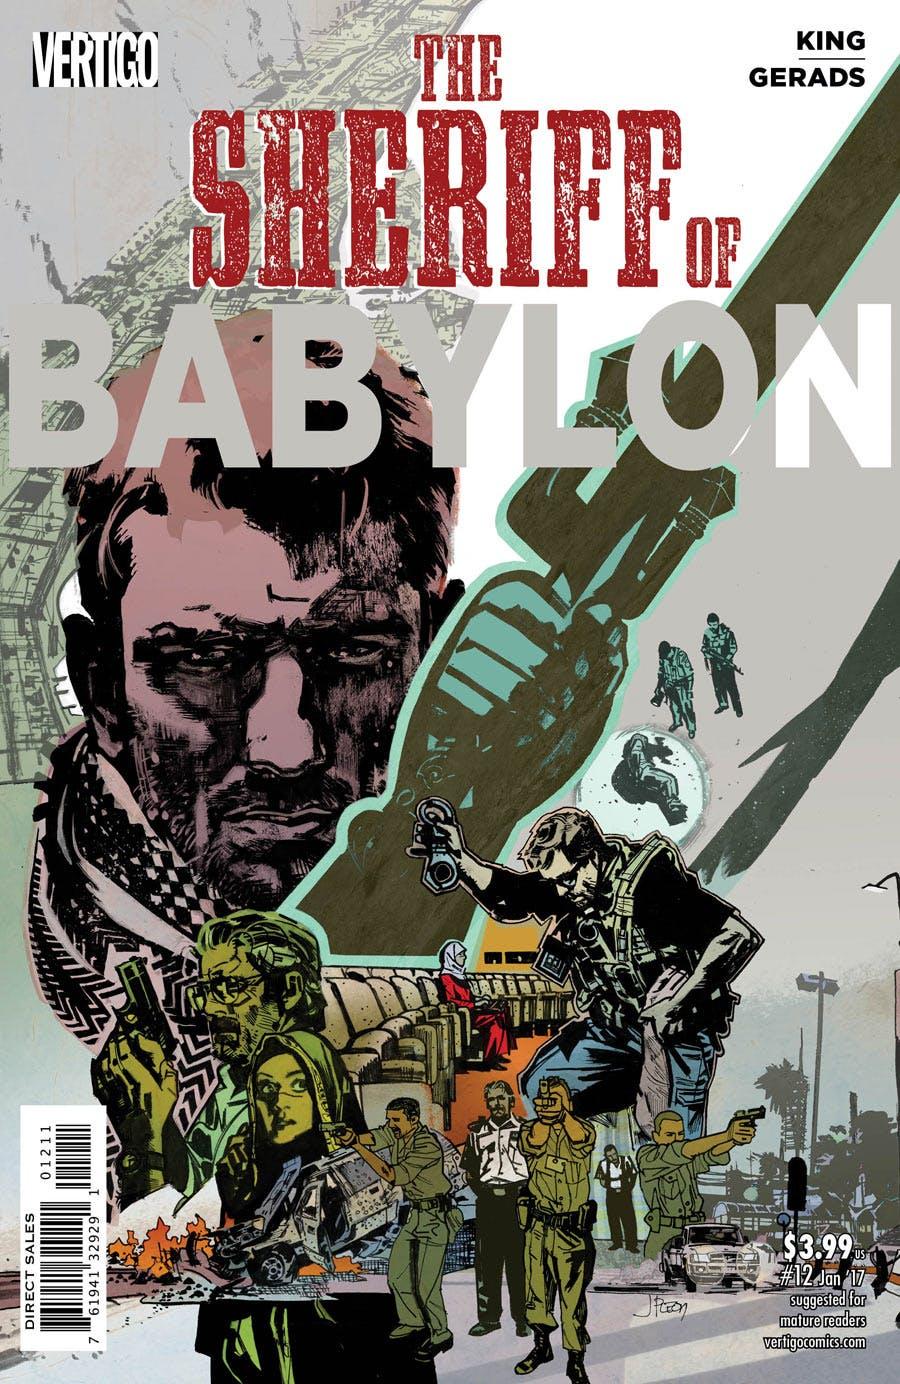 The Sheriff of Babylon Vol. 1 #12